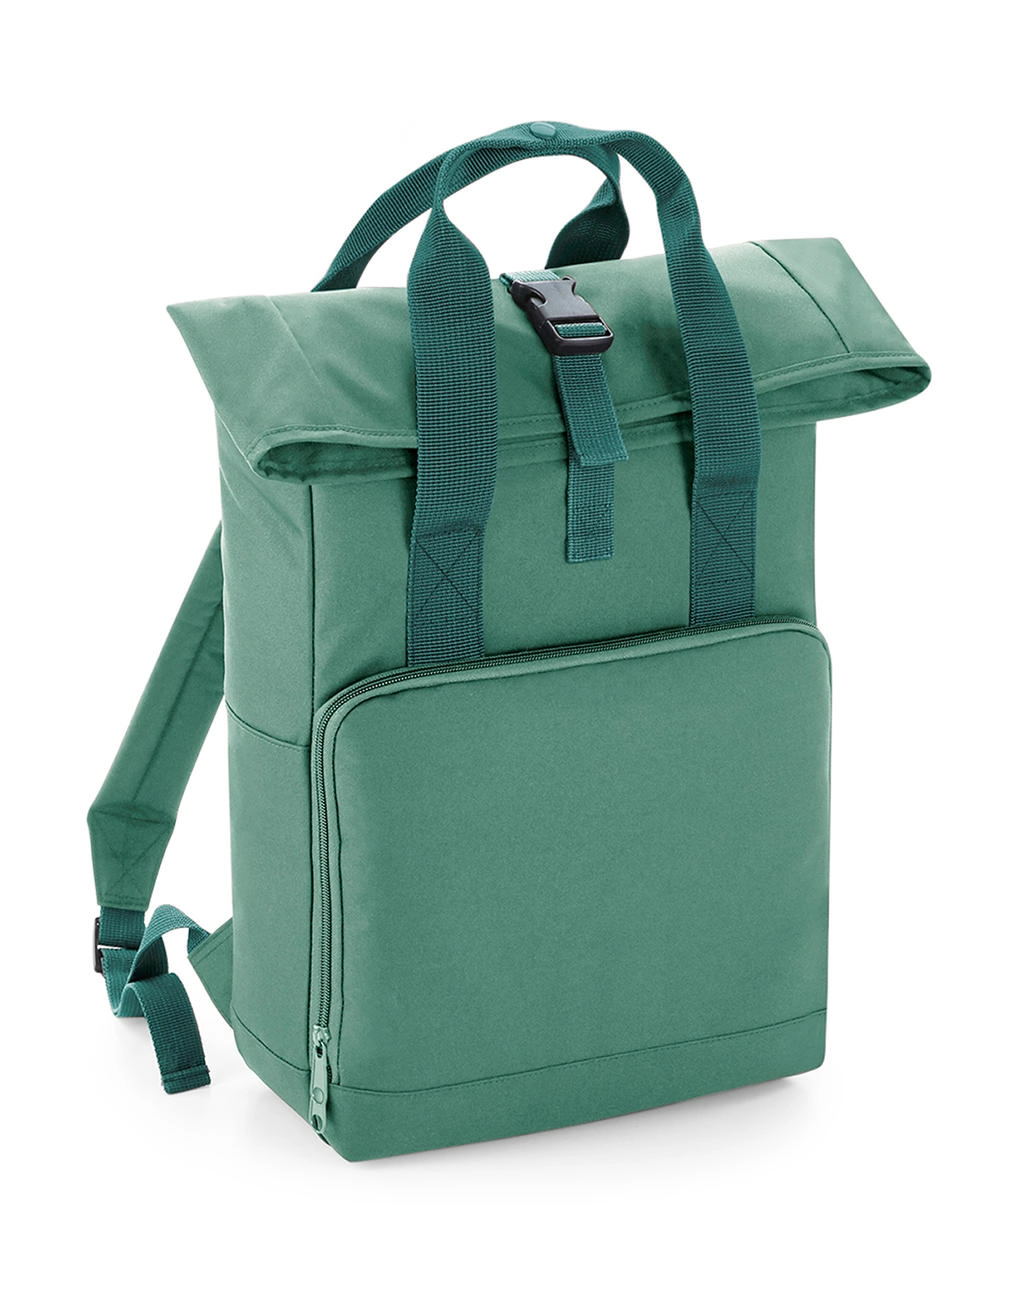 Twin Handle Roll-Top Backpack zum Besticken und Bedrucken in der Farbe Sage Green mit Ihren Logo, Schriftzug oder Motiv.